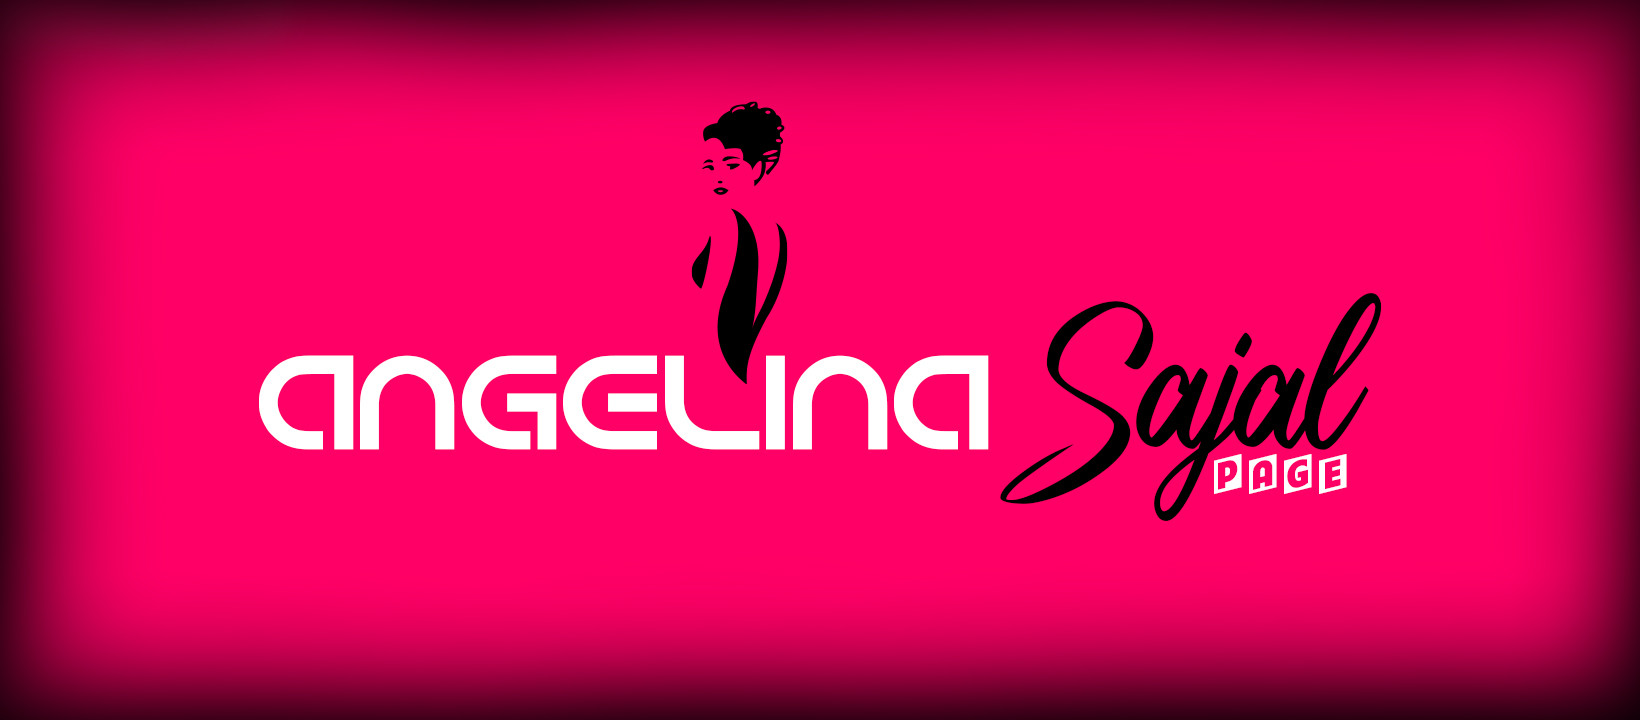 Facebook Header for "Angelina Sajal Page"